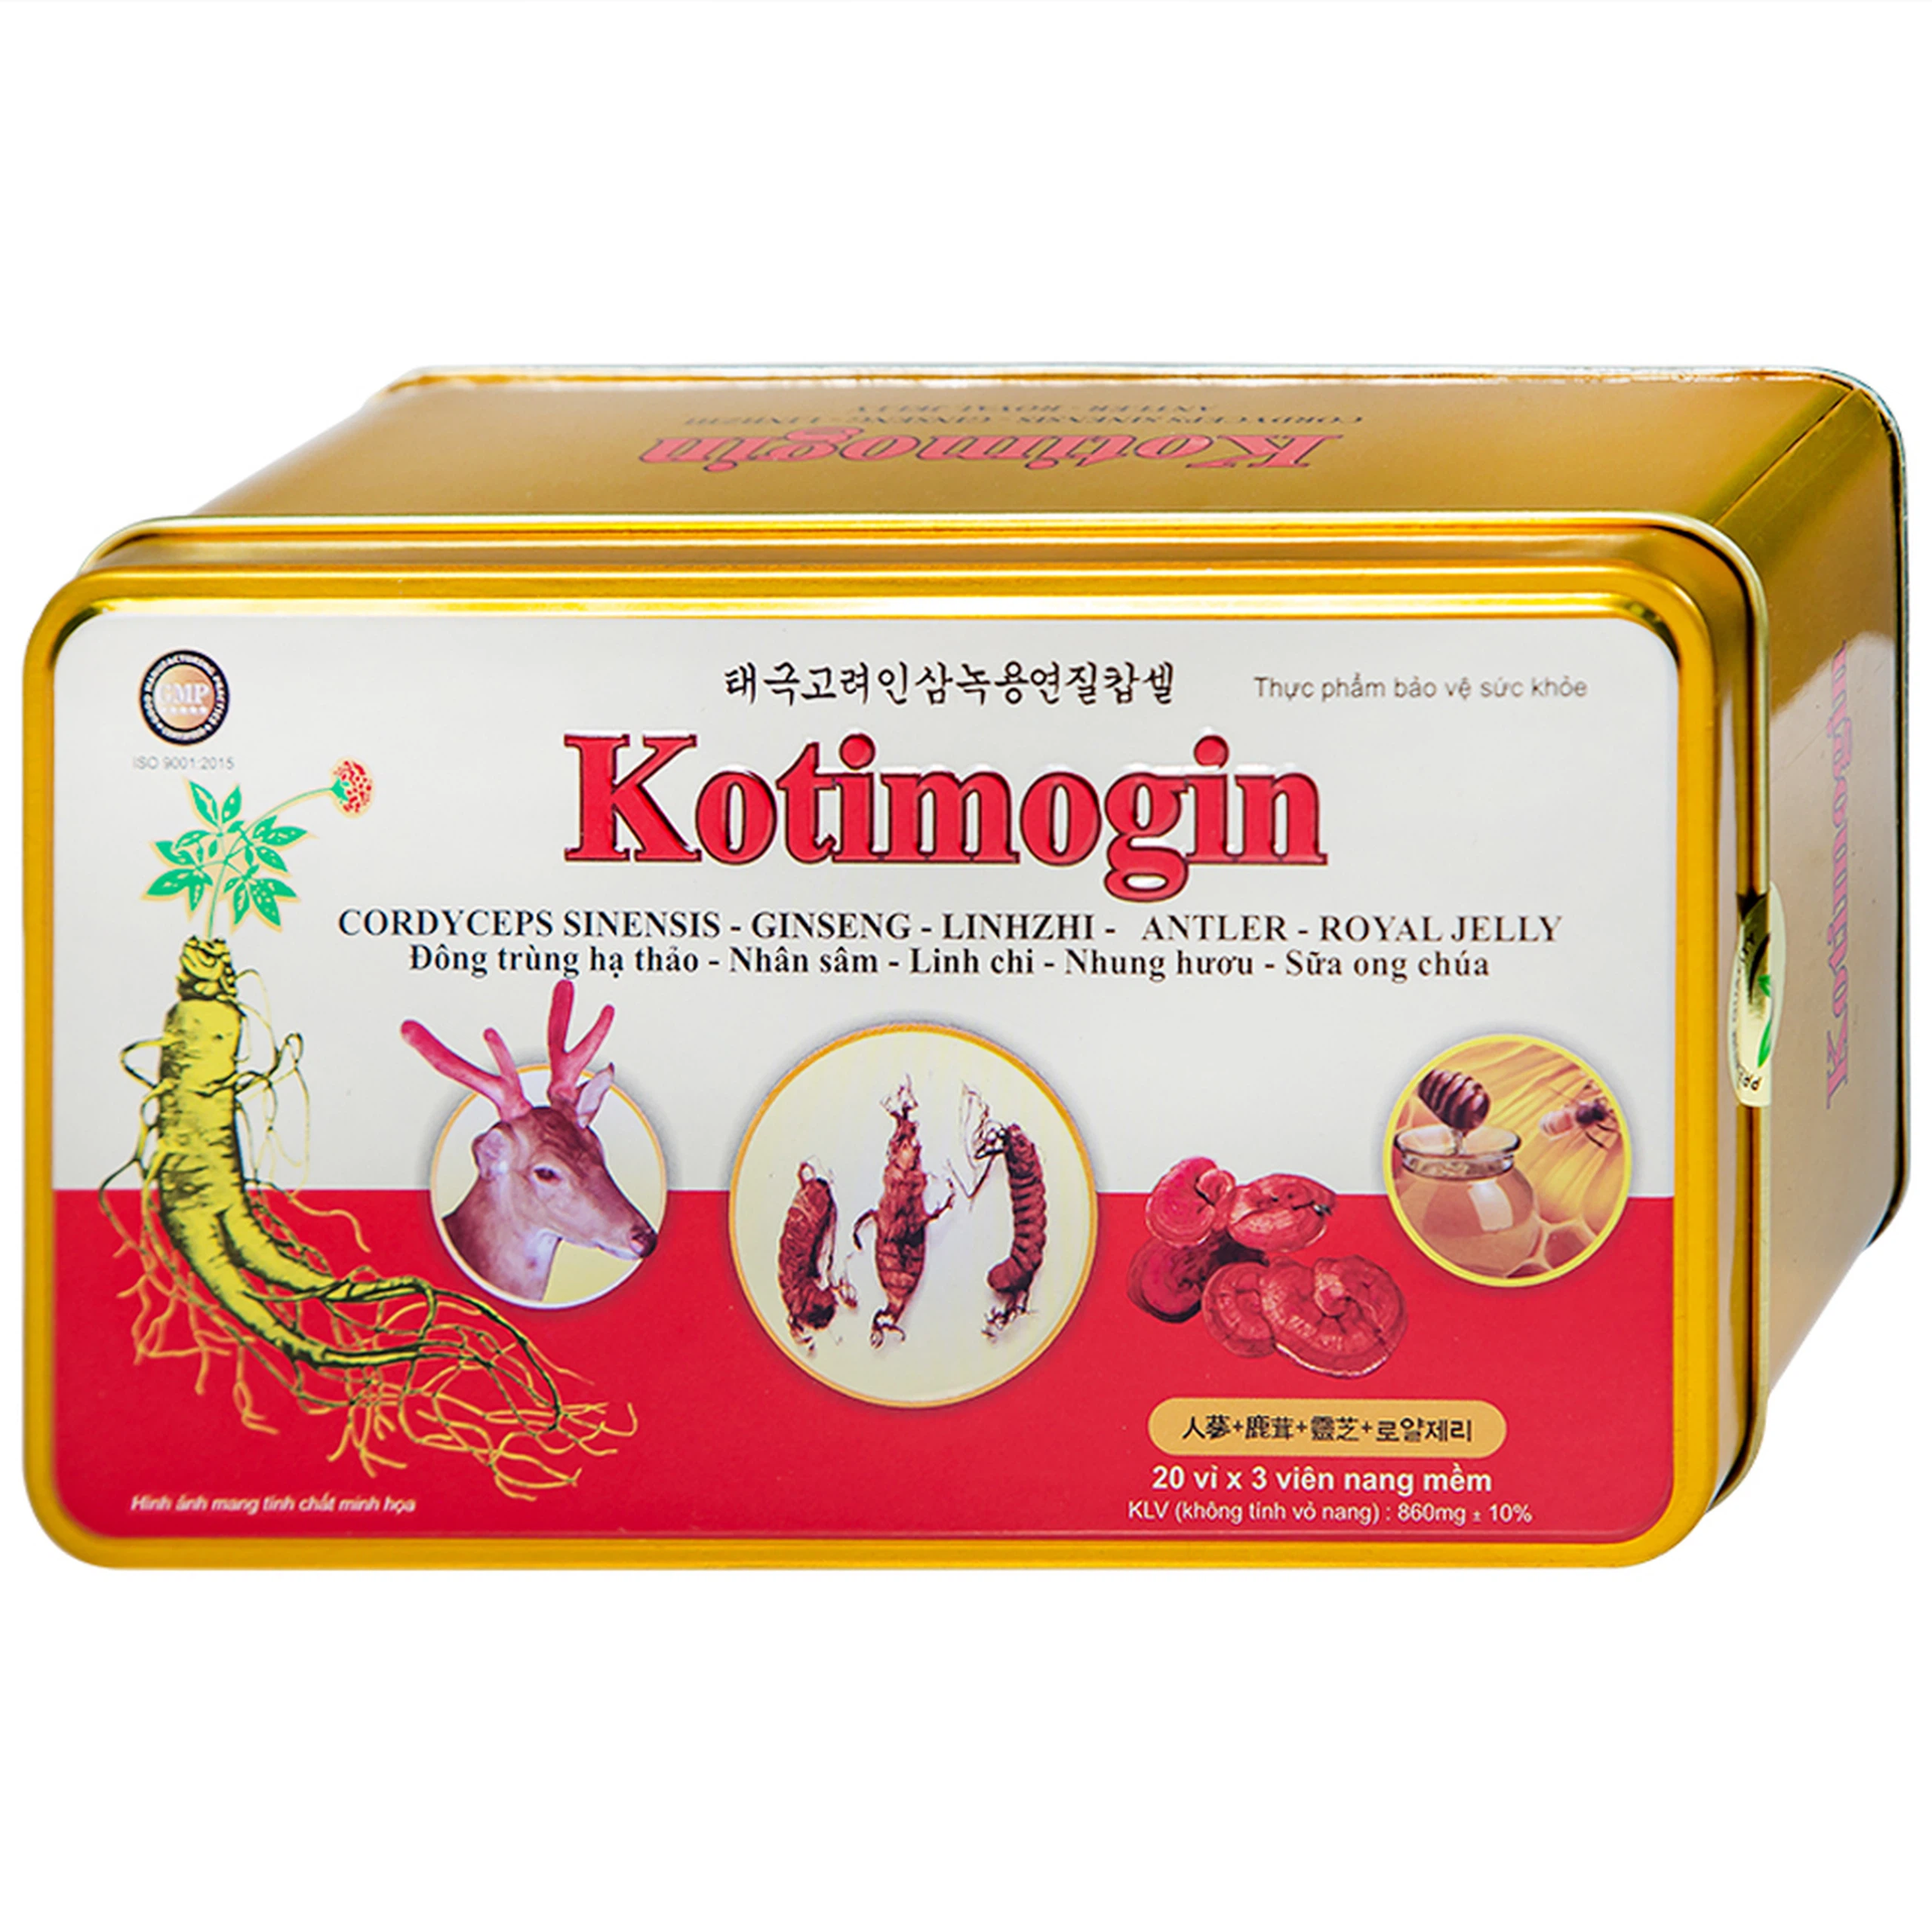 Viên uống Kotimogin Thành Công tăng cường sức khỏe, hạn chế sự lão hóa (20 vỉ x 3 viên)